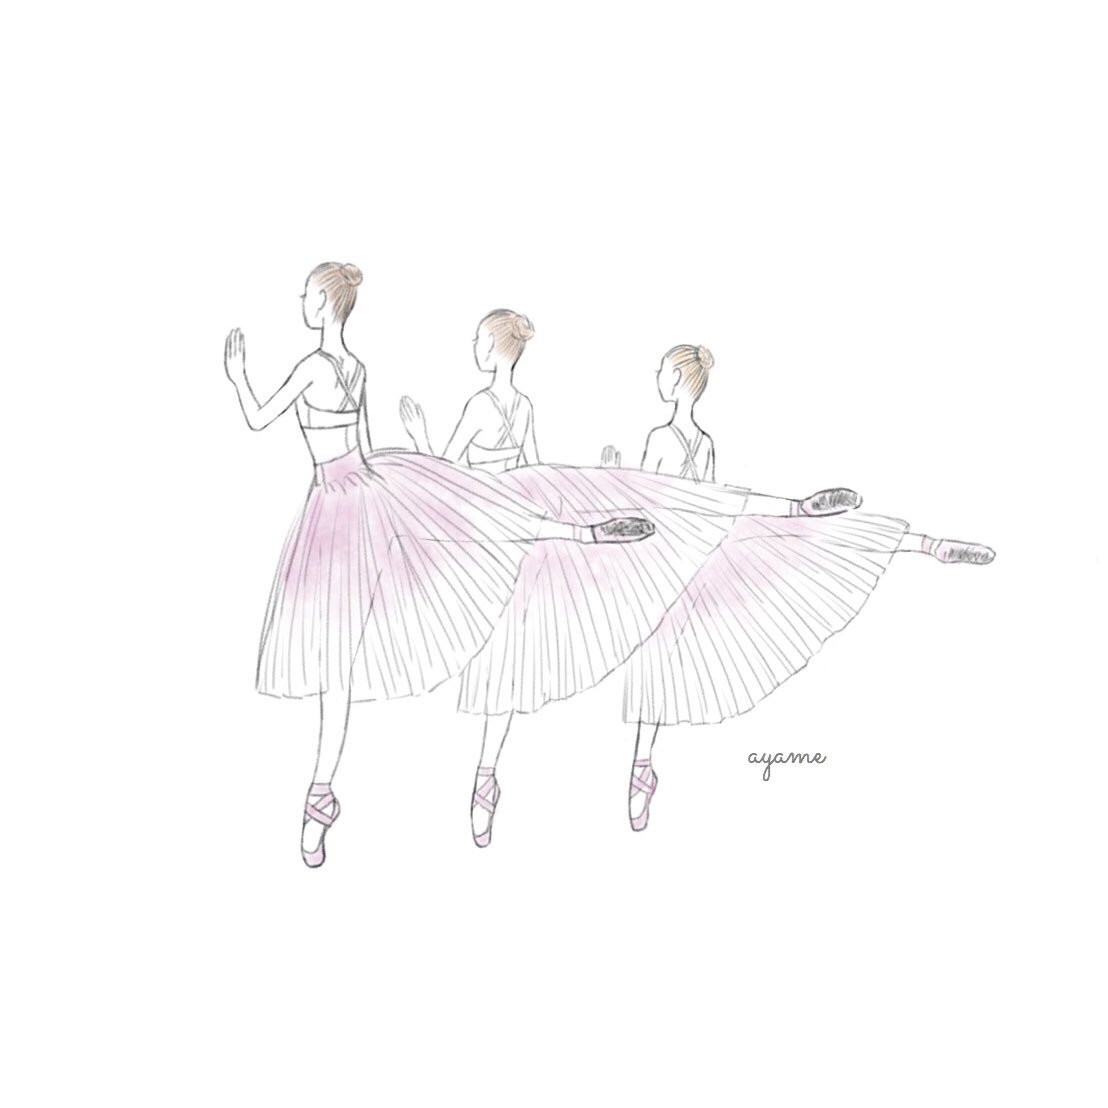 Ayame イラスト仕事募集中 V Twitter バレリーナ可愛い 衣装やシューズも色味も素敵 イラストレーター イラスト バレリーナ Ballerina